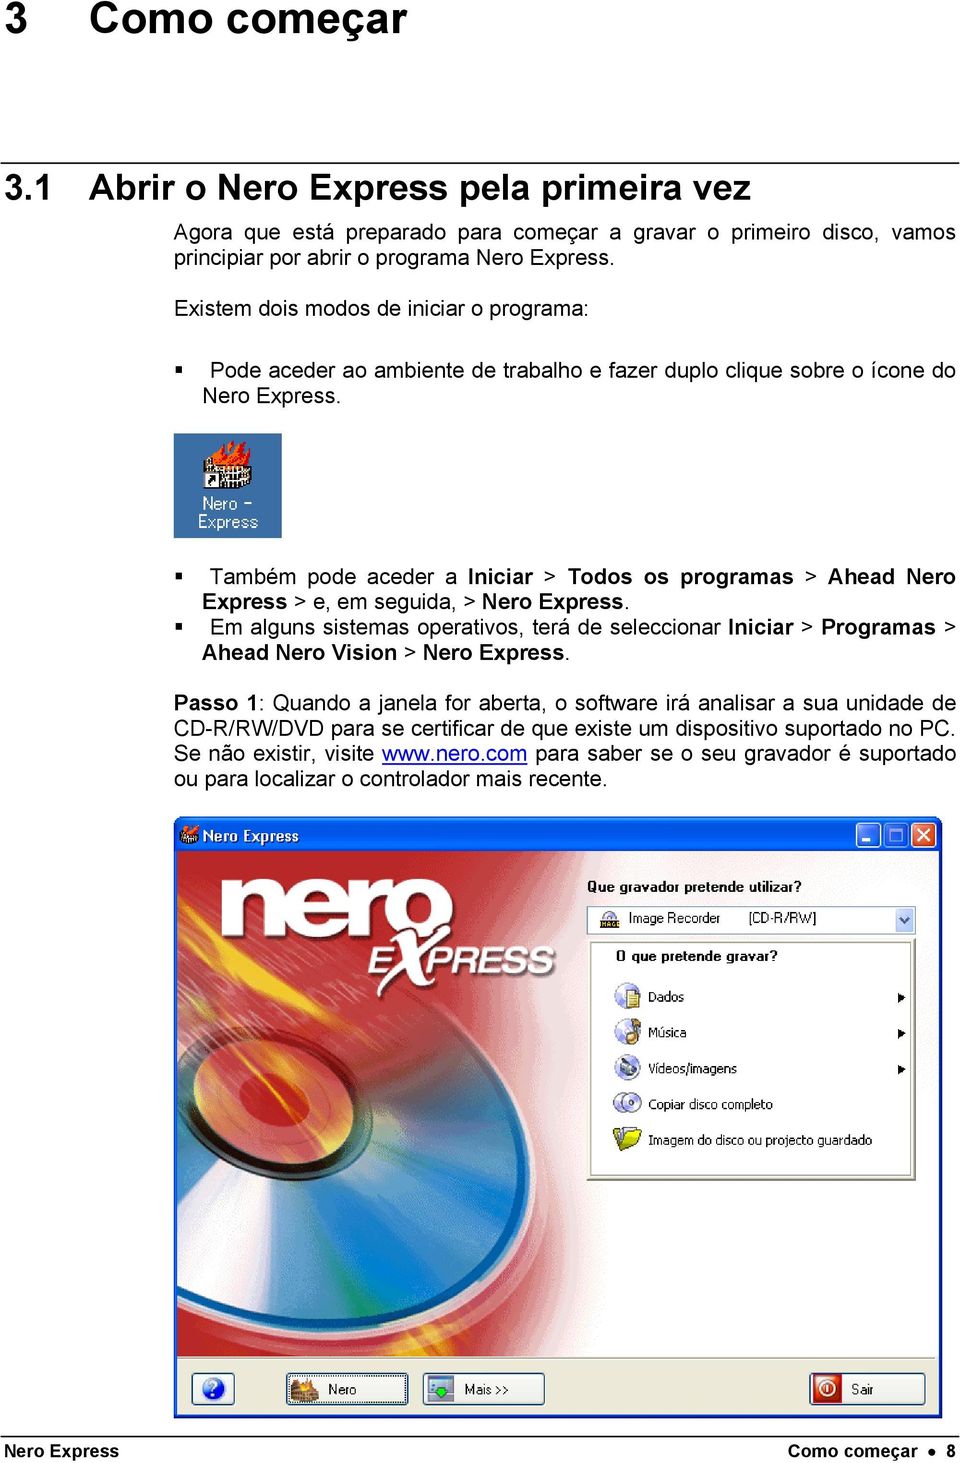 Também pode aceder a Iniciar > Todos os programas > Ahead Nero Express > e, em seguida, > Nero Express.